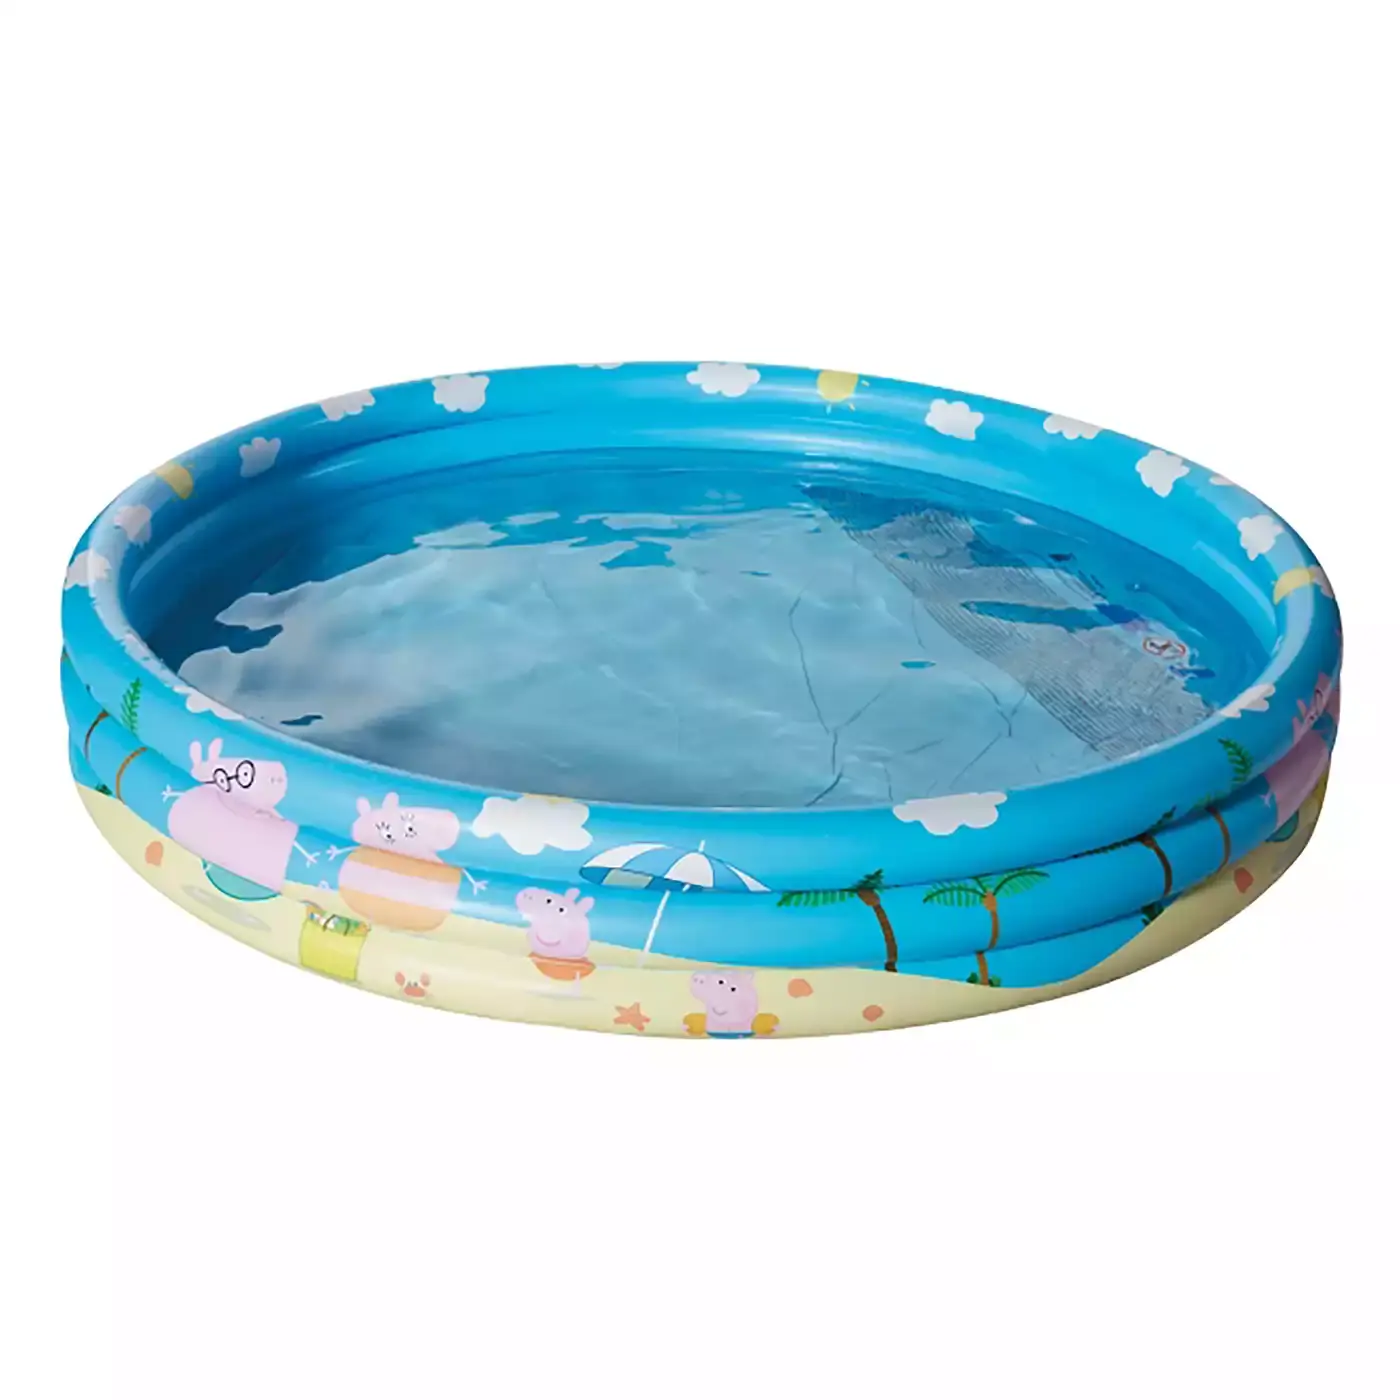 Peppa Pig 3-Ring-Pool 150x25cm HAPPY PEOPLE Blau 2000578442101 3